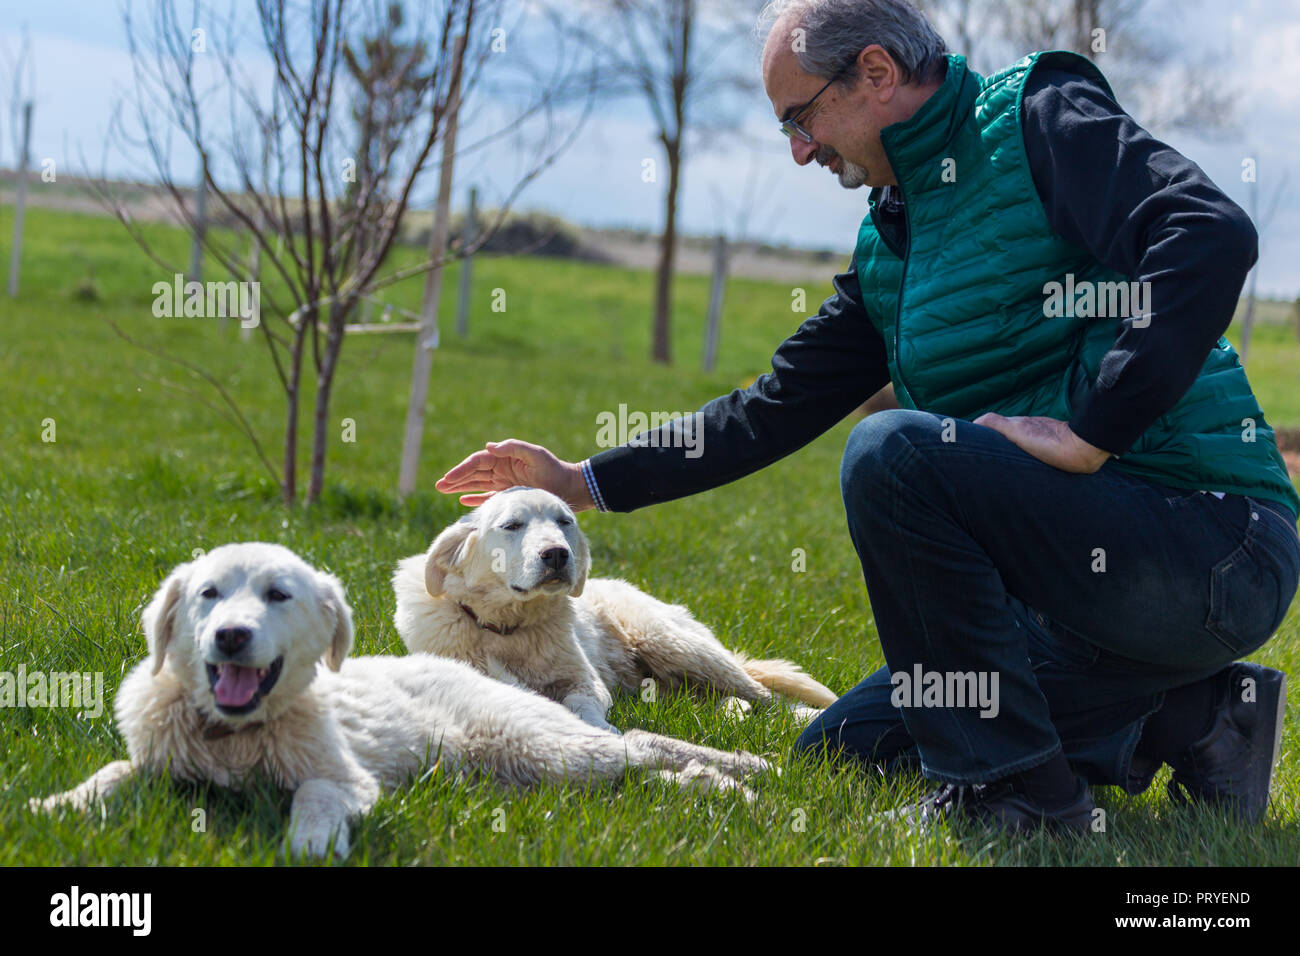 Akbas Gattung Herde Hund und ein Mann sie streicheln, sivrihisar, Eskisehir, Türkei Stockfoto